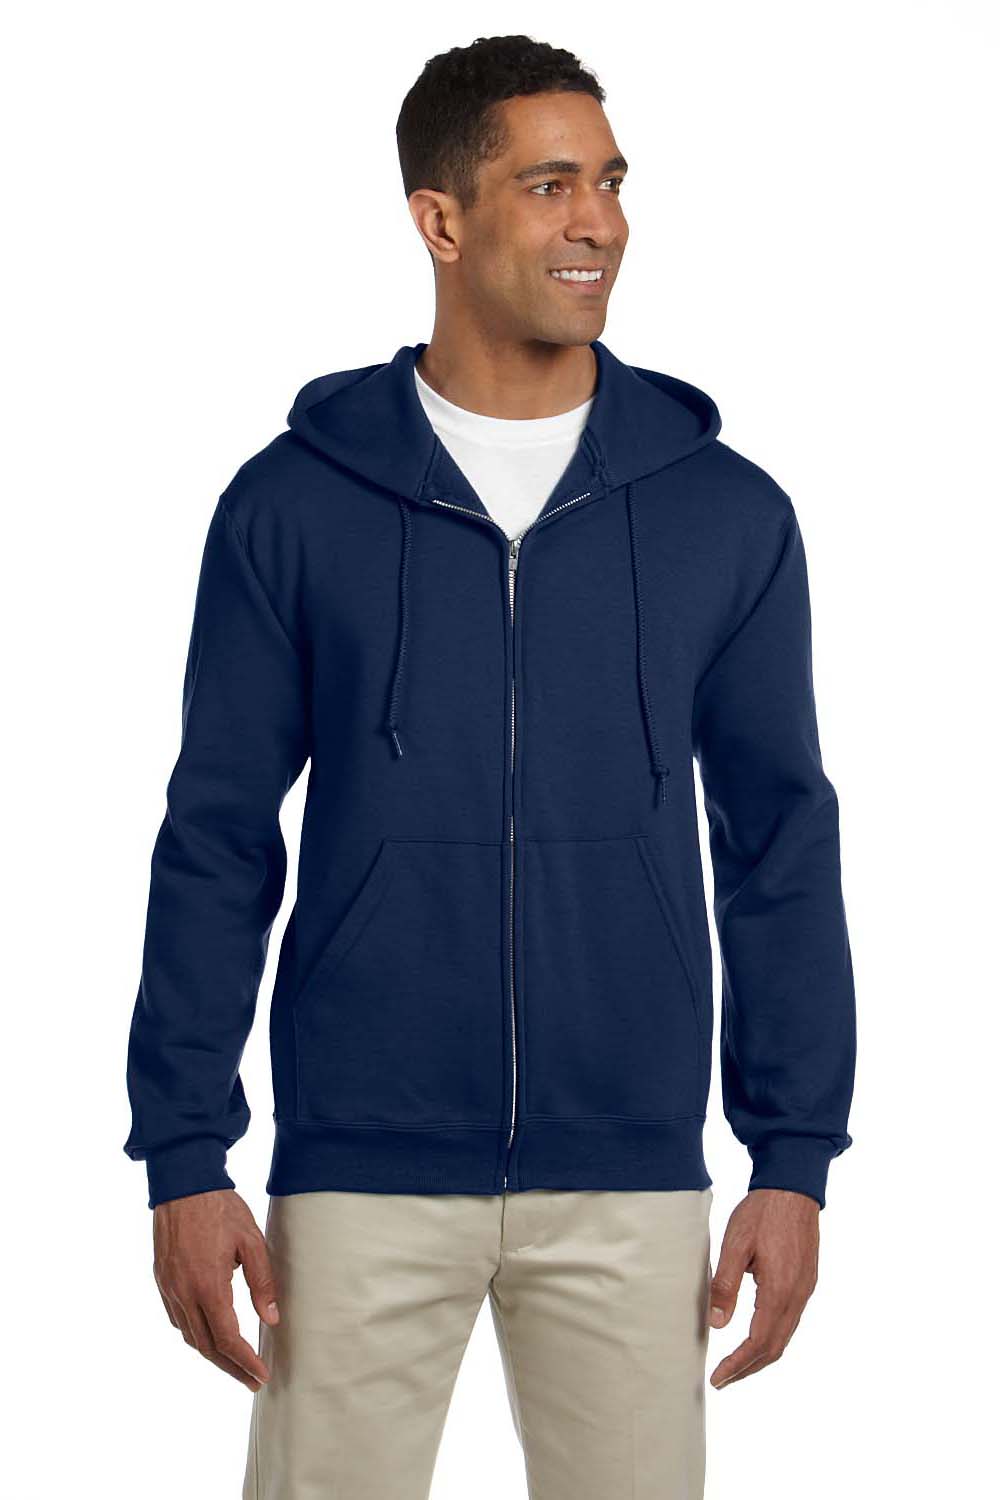 Jerzees 4999 Mens Super Sweats NuBlend Fleece Full Zip Hooded Sweatshirt Hoodie Navy Blue Front